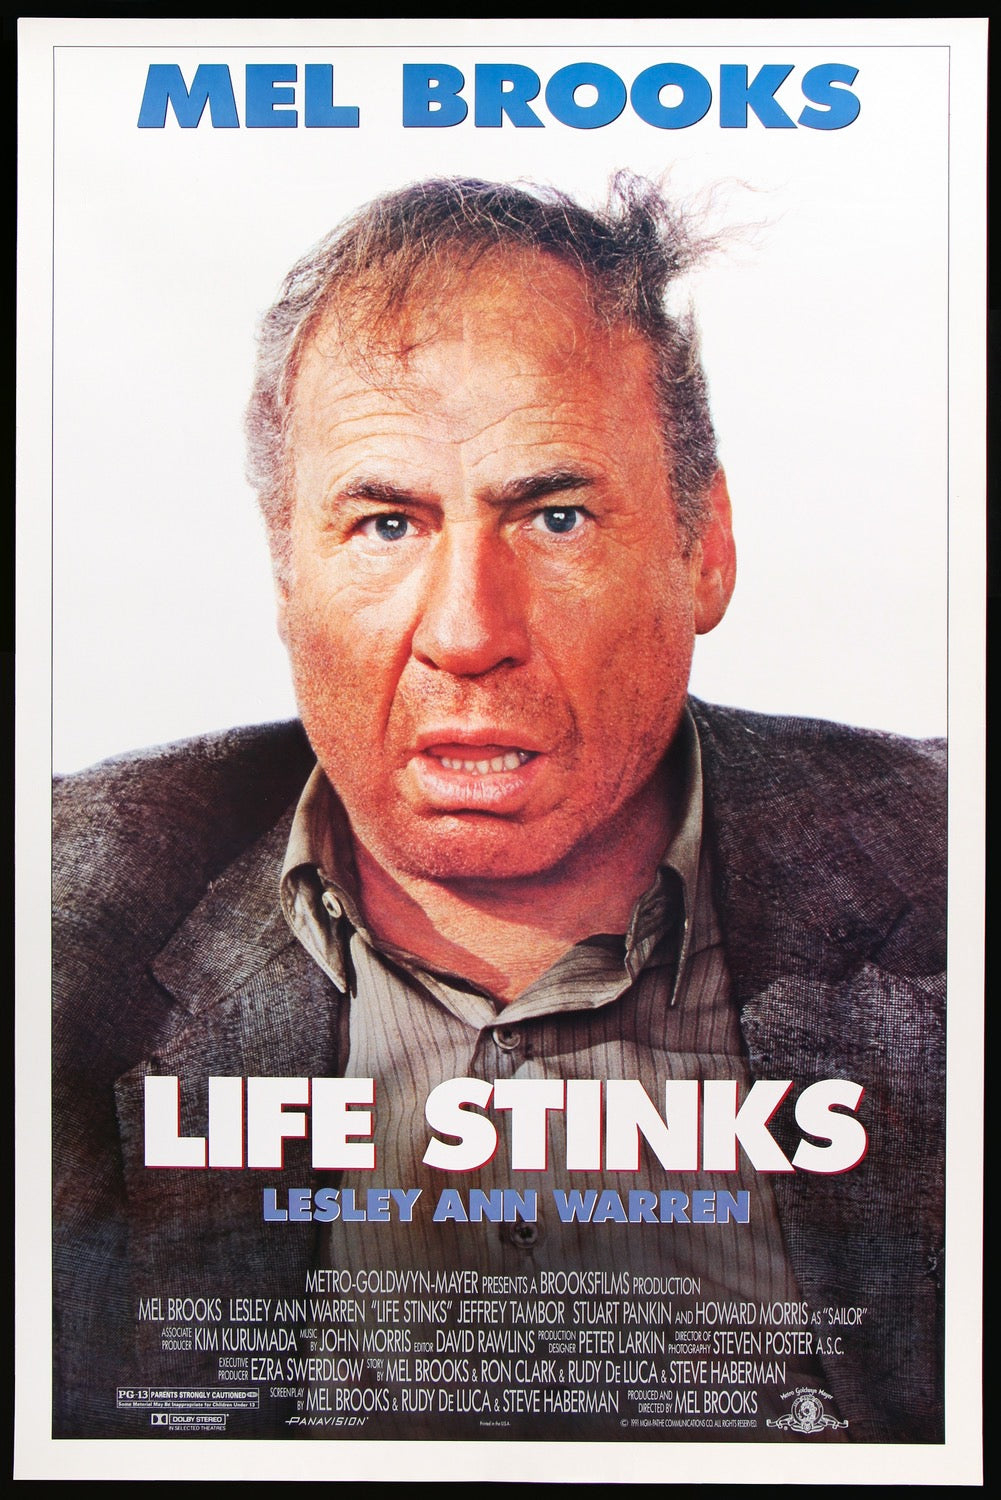 Life Stinks (1991) original movie poster for sale at Original Film Art